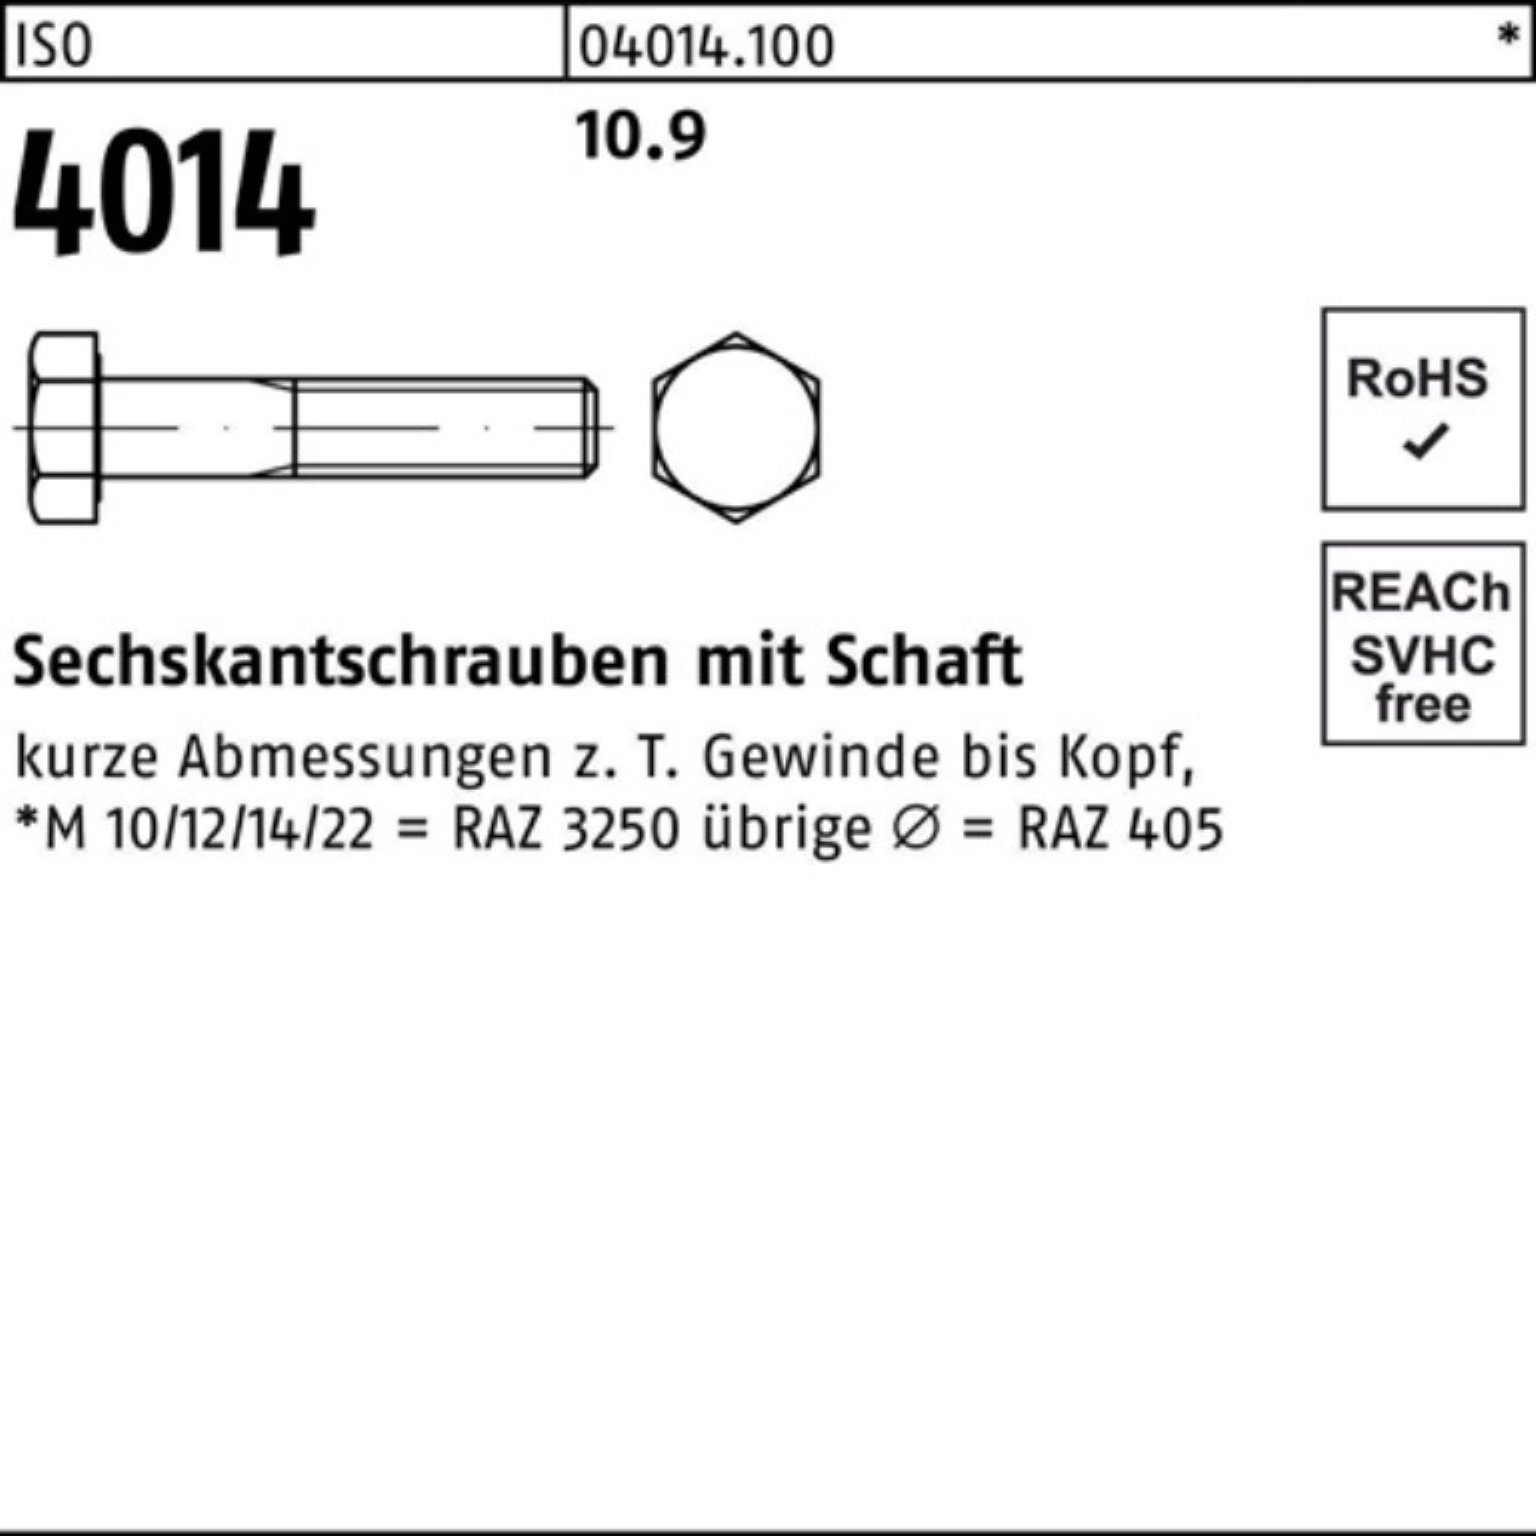 Bufab Sechskantschraube 100er ISO 10.9 Stück 4014 Pack I Sechskantschraube Schaft M16x 25 140